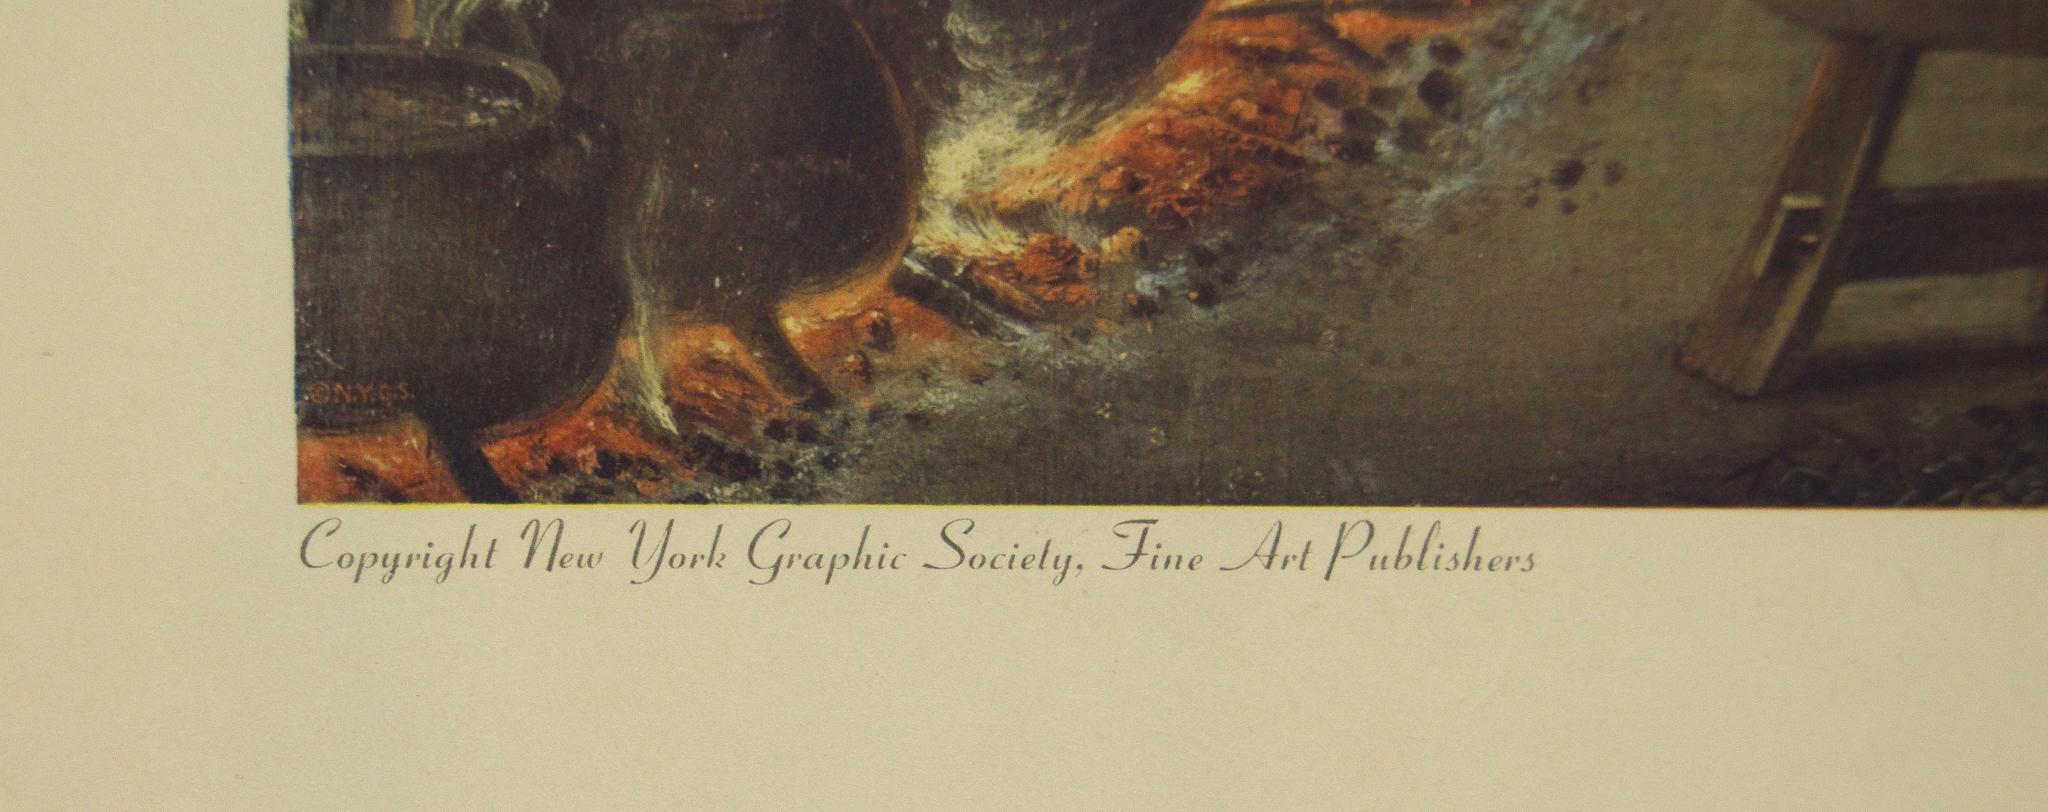 Publié par New York Graphic Society
Imprimé aux États-Unis
En bon état, léger jaunissement de l'image dû à l'âge. 
Mesure 20 po x 26 po